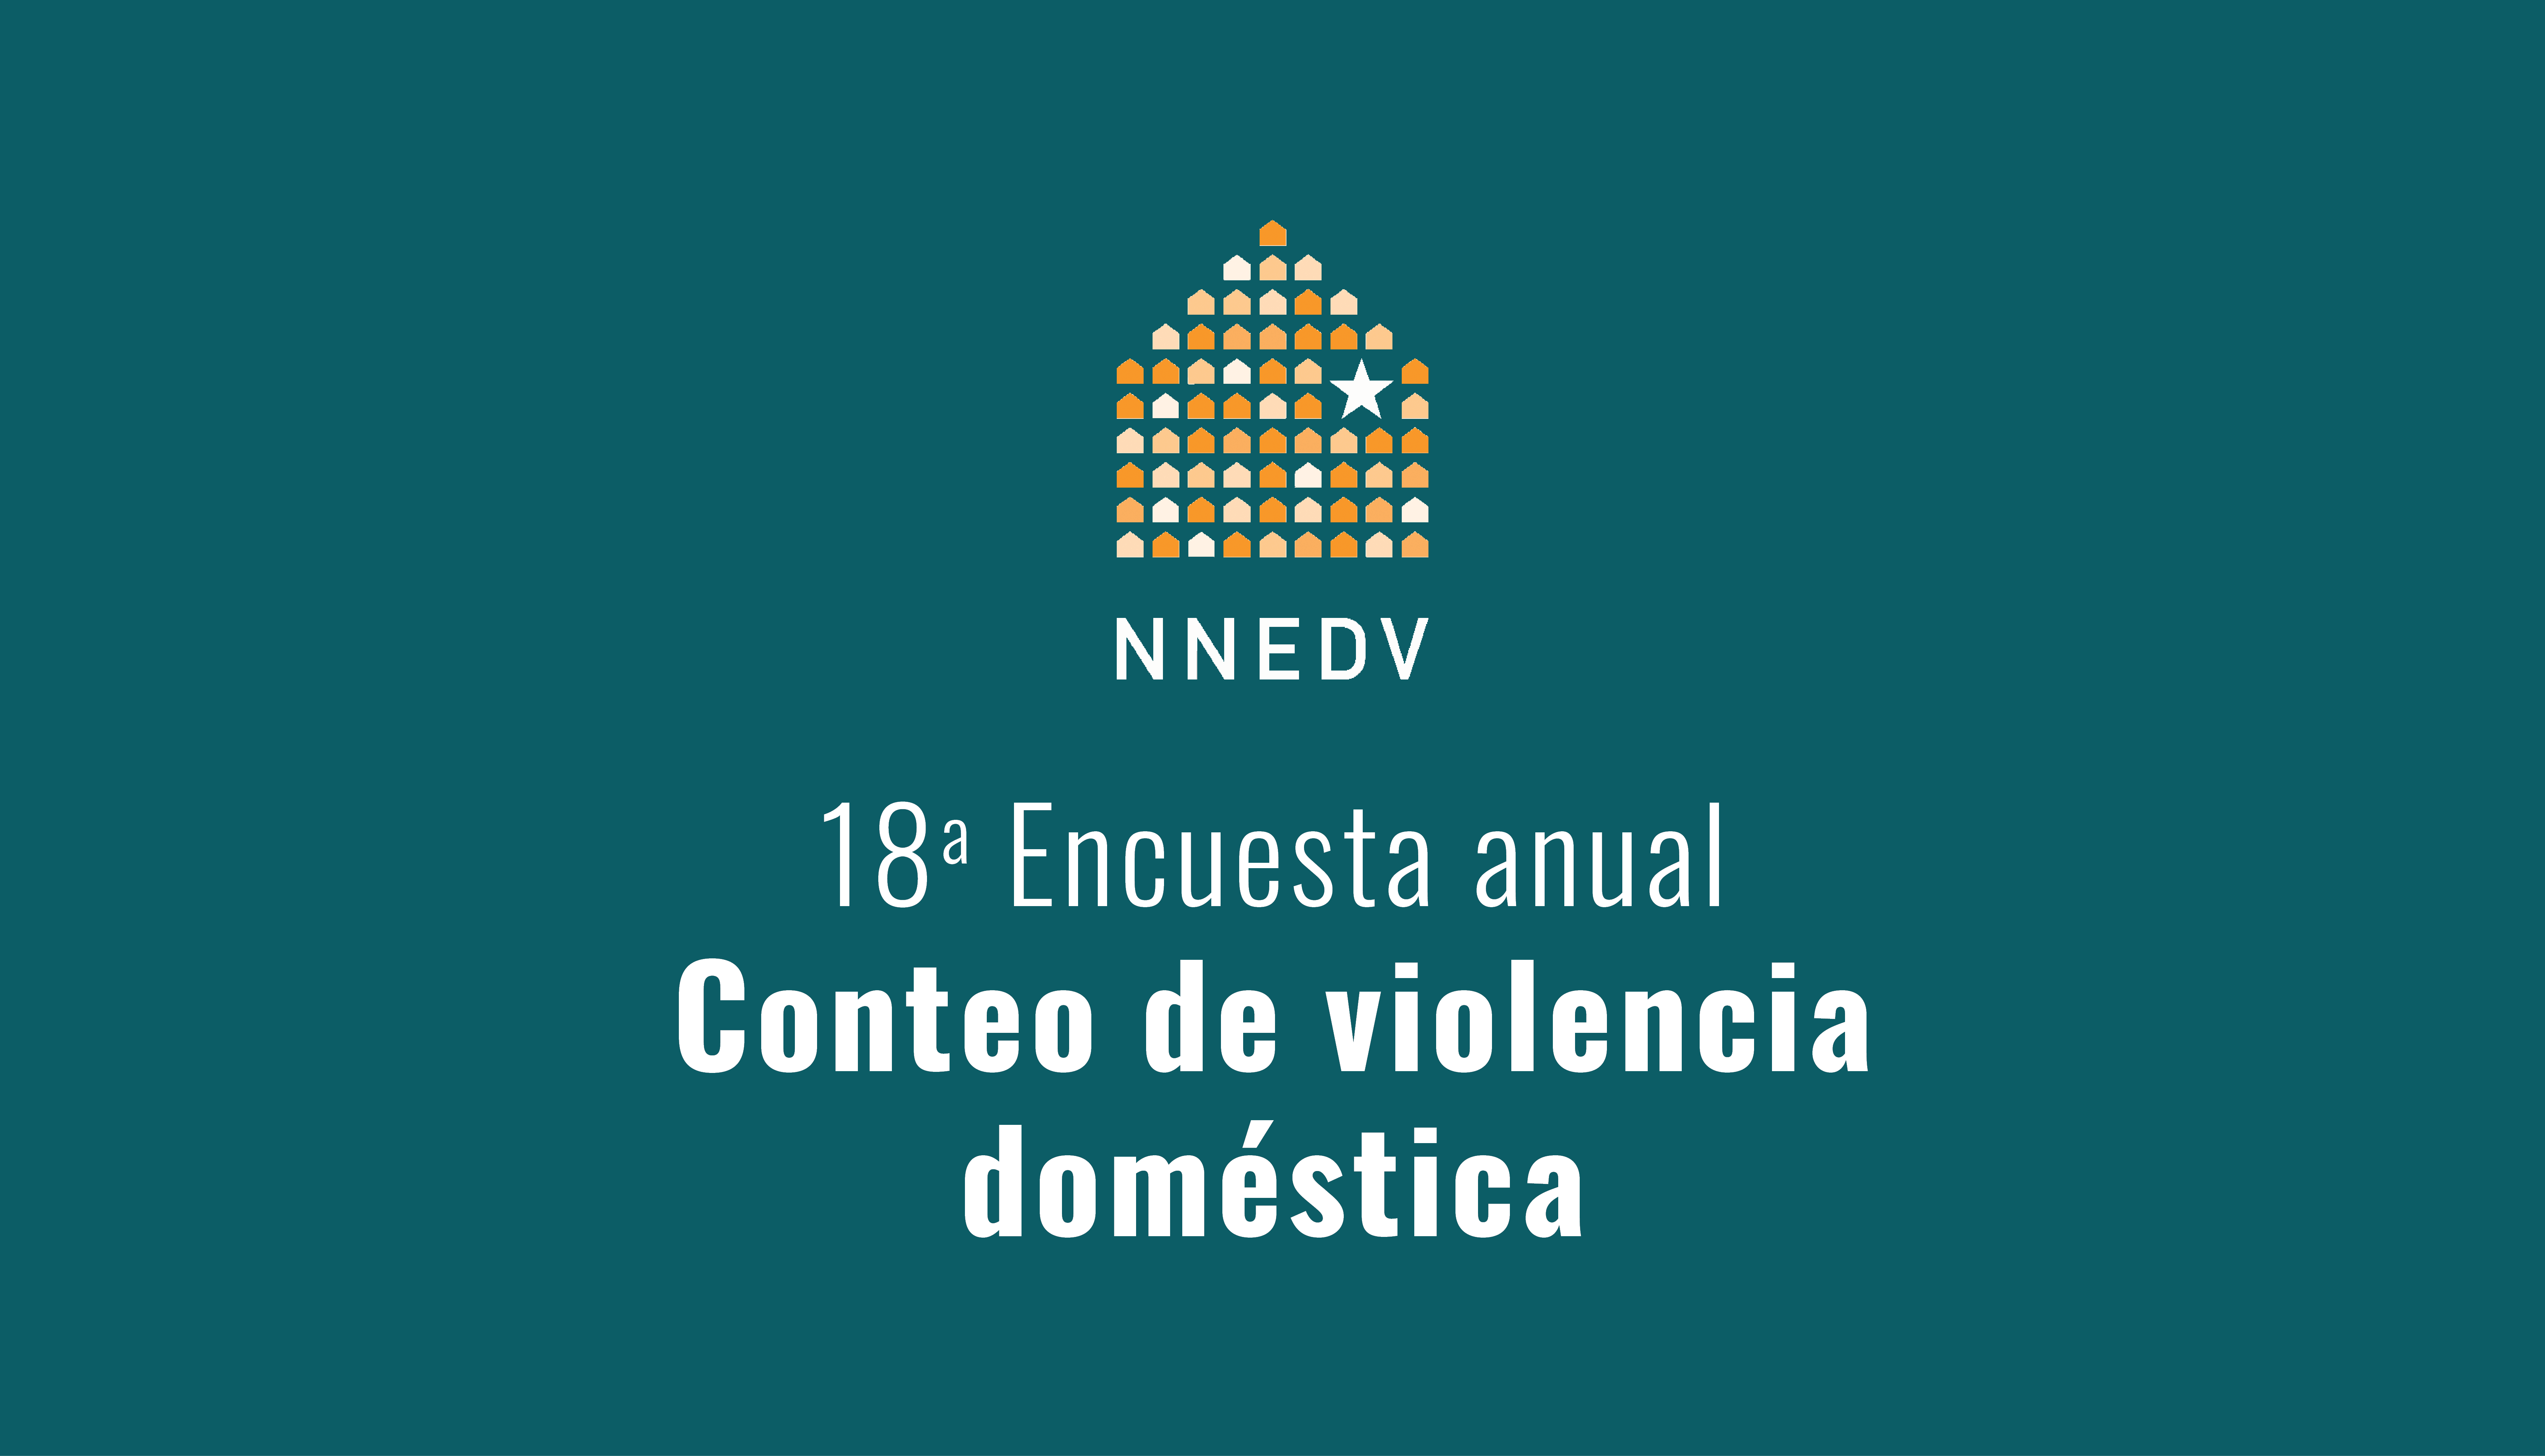 18a Encuesta annual conteo de violencia doméstica – Preguntas frecuentes y definiciones de los términos